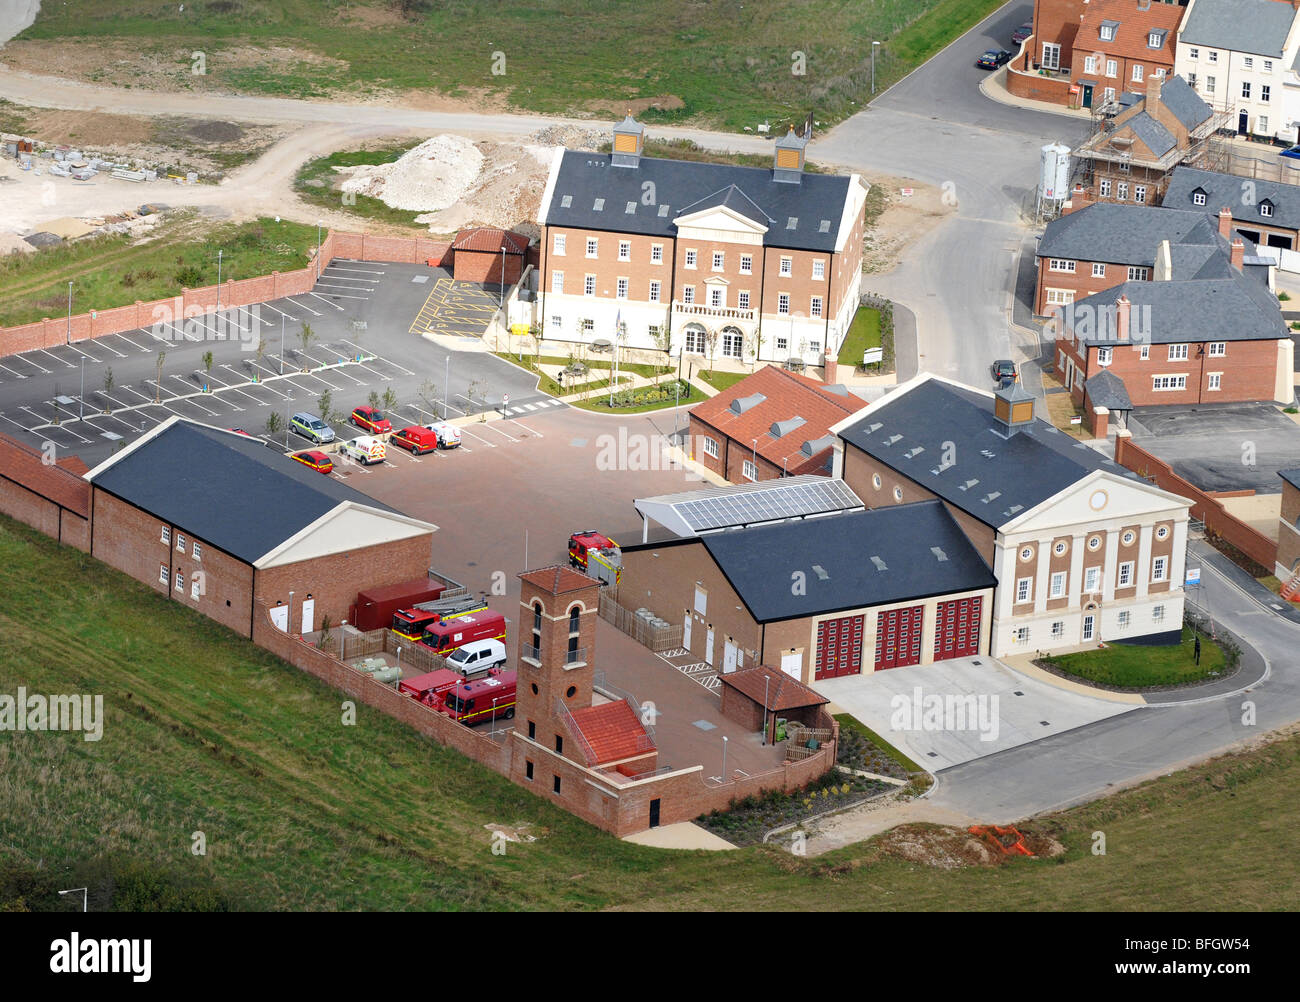 Poundbury Fire Station in Dorset, Poundbury Village Fire Station, aerial view of Poundbury Fire Station Stock Photo